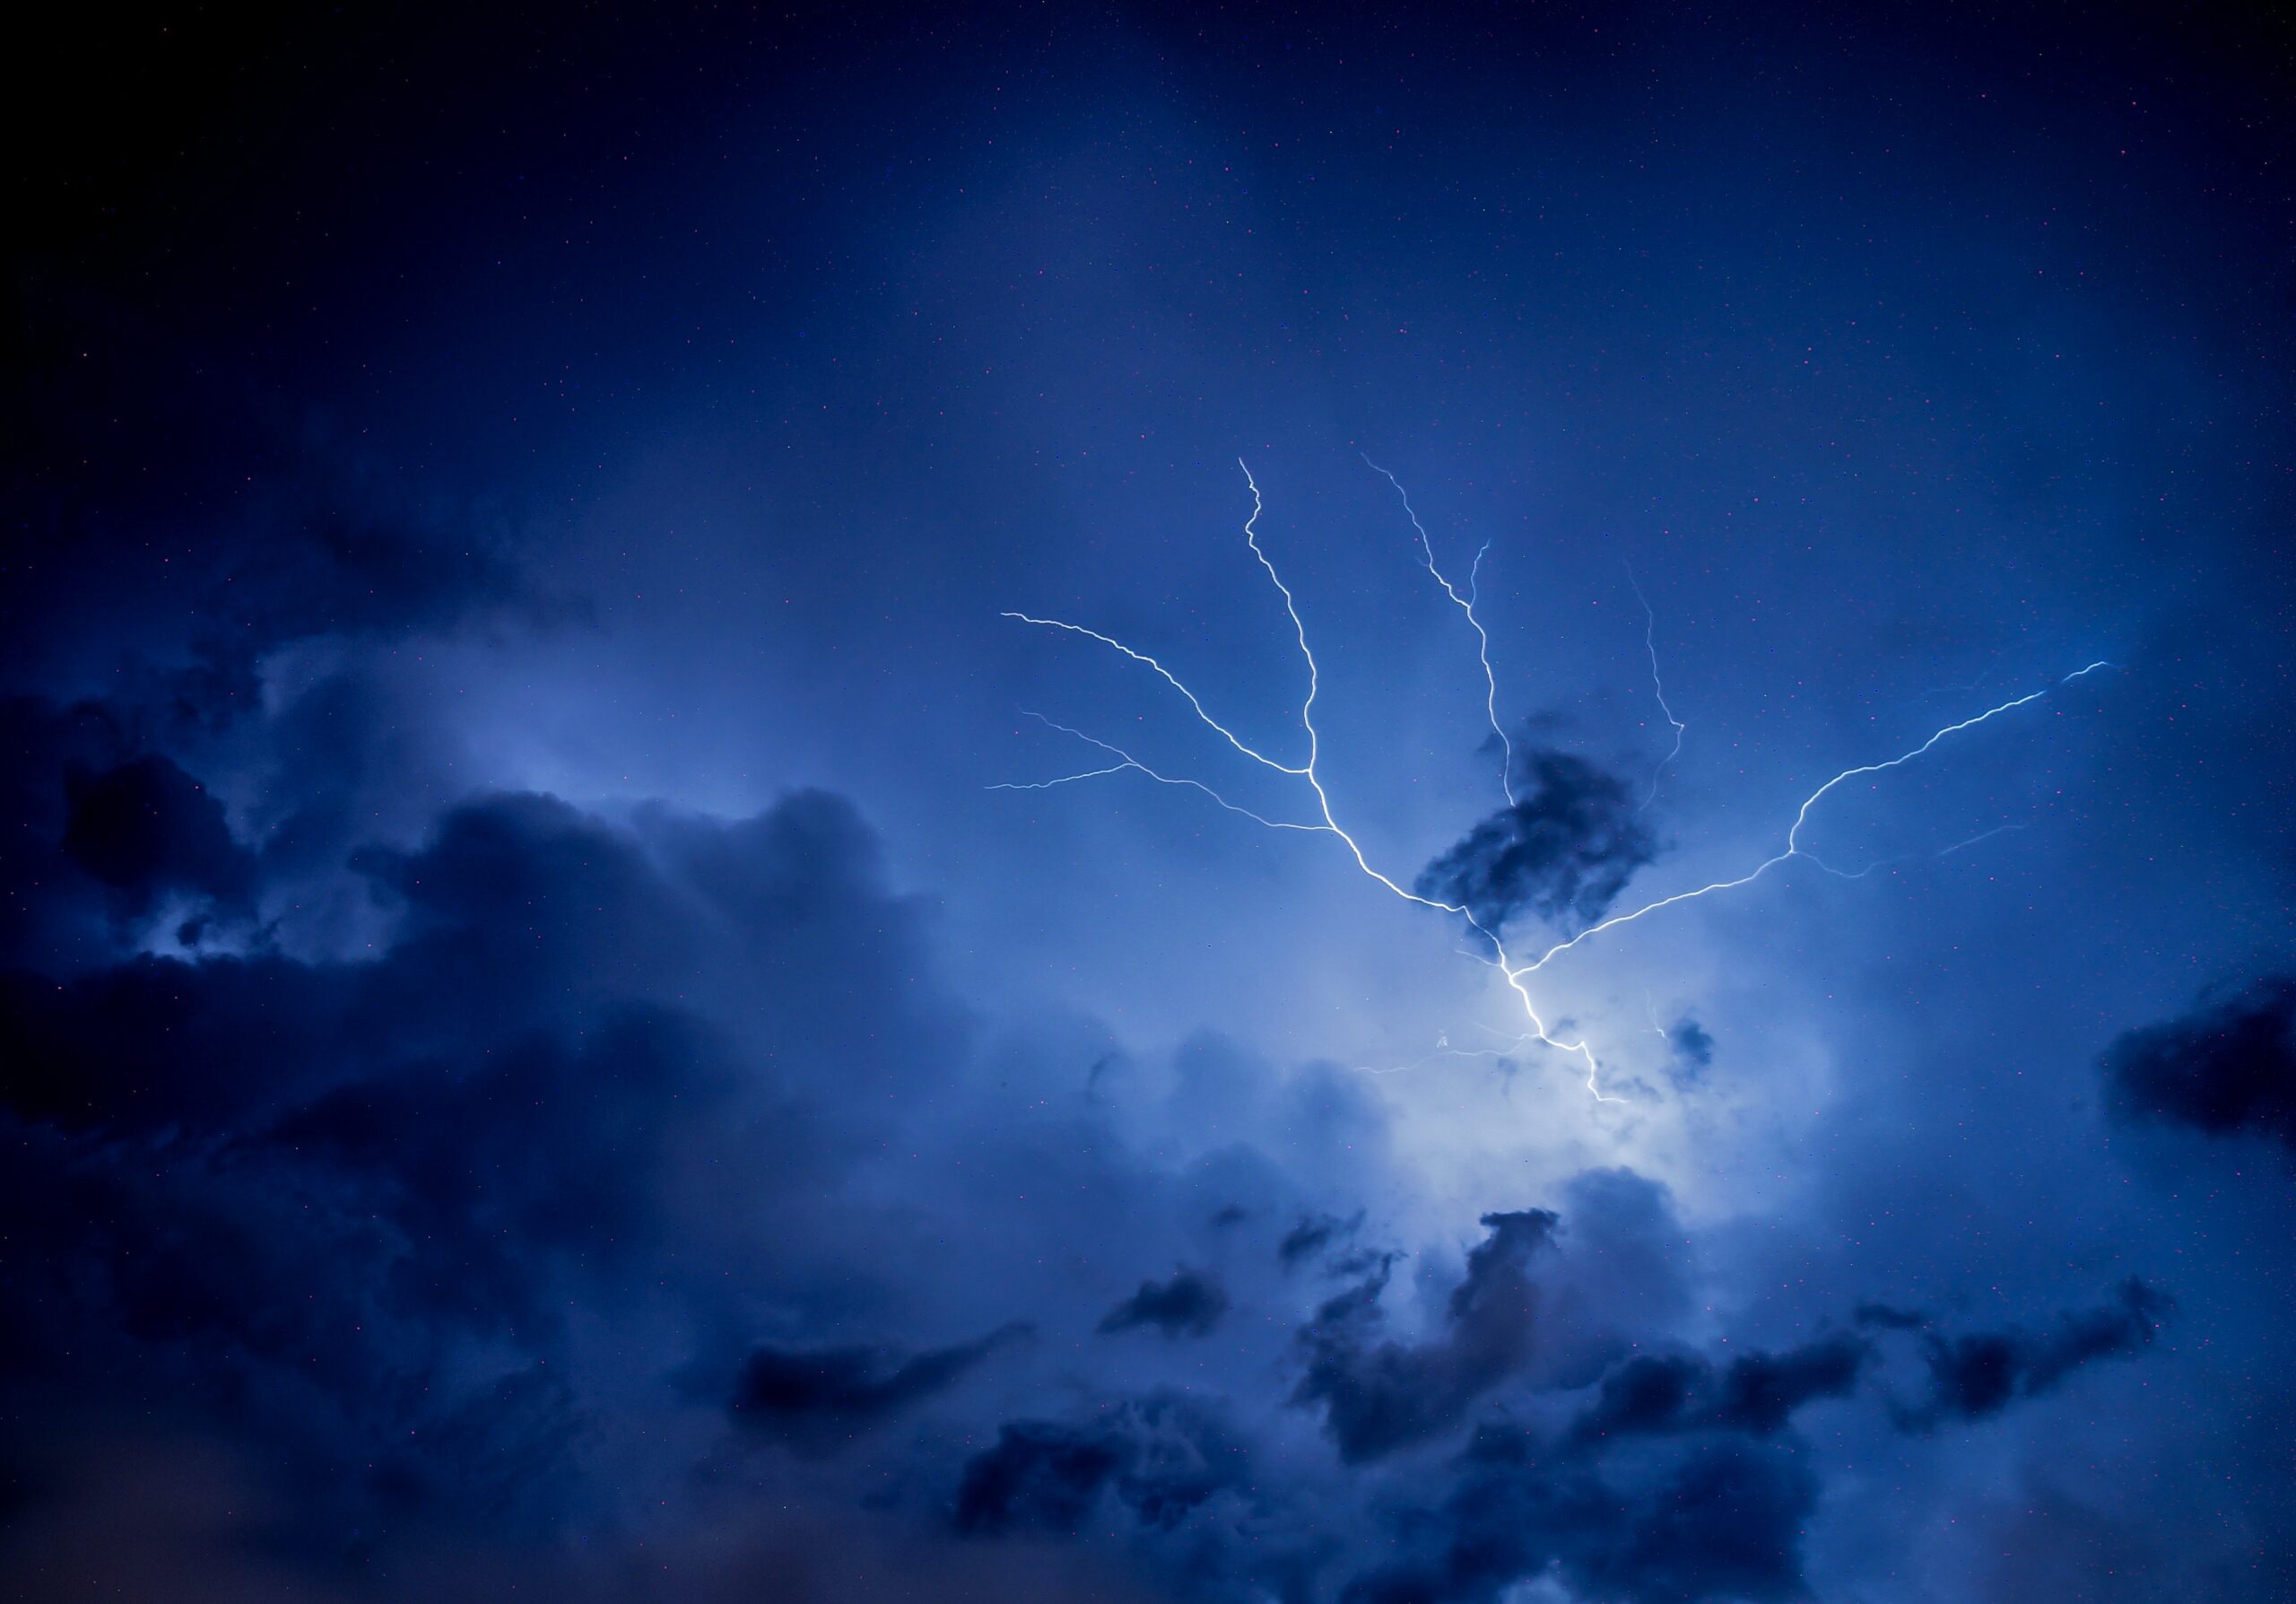 COD GALBEN de averse în mai multe localități din județul Constanța: Meteorologii anunță descărcări electrice și vijelii